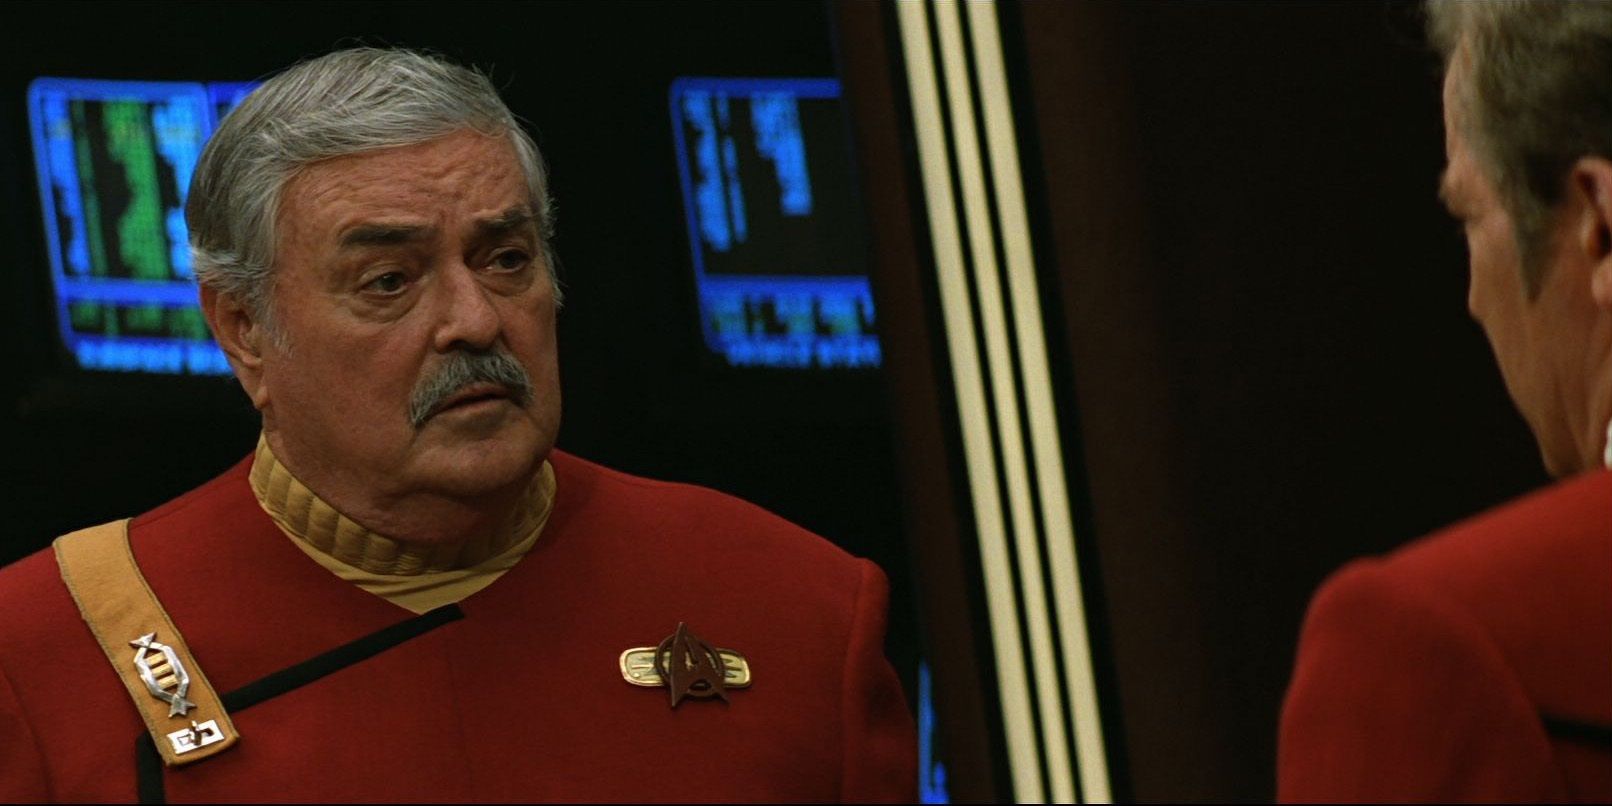 Scotty nombra a Star Trek: TNG Hero que encarna el espíritu de la empresa original